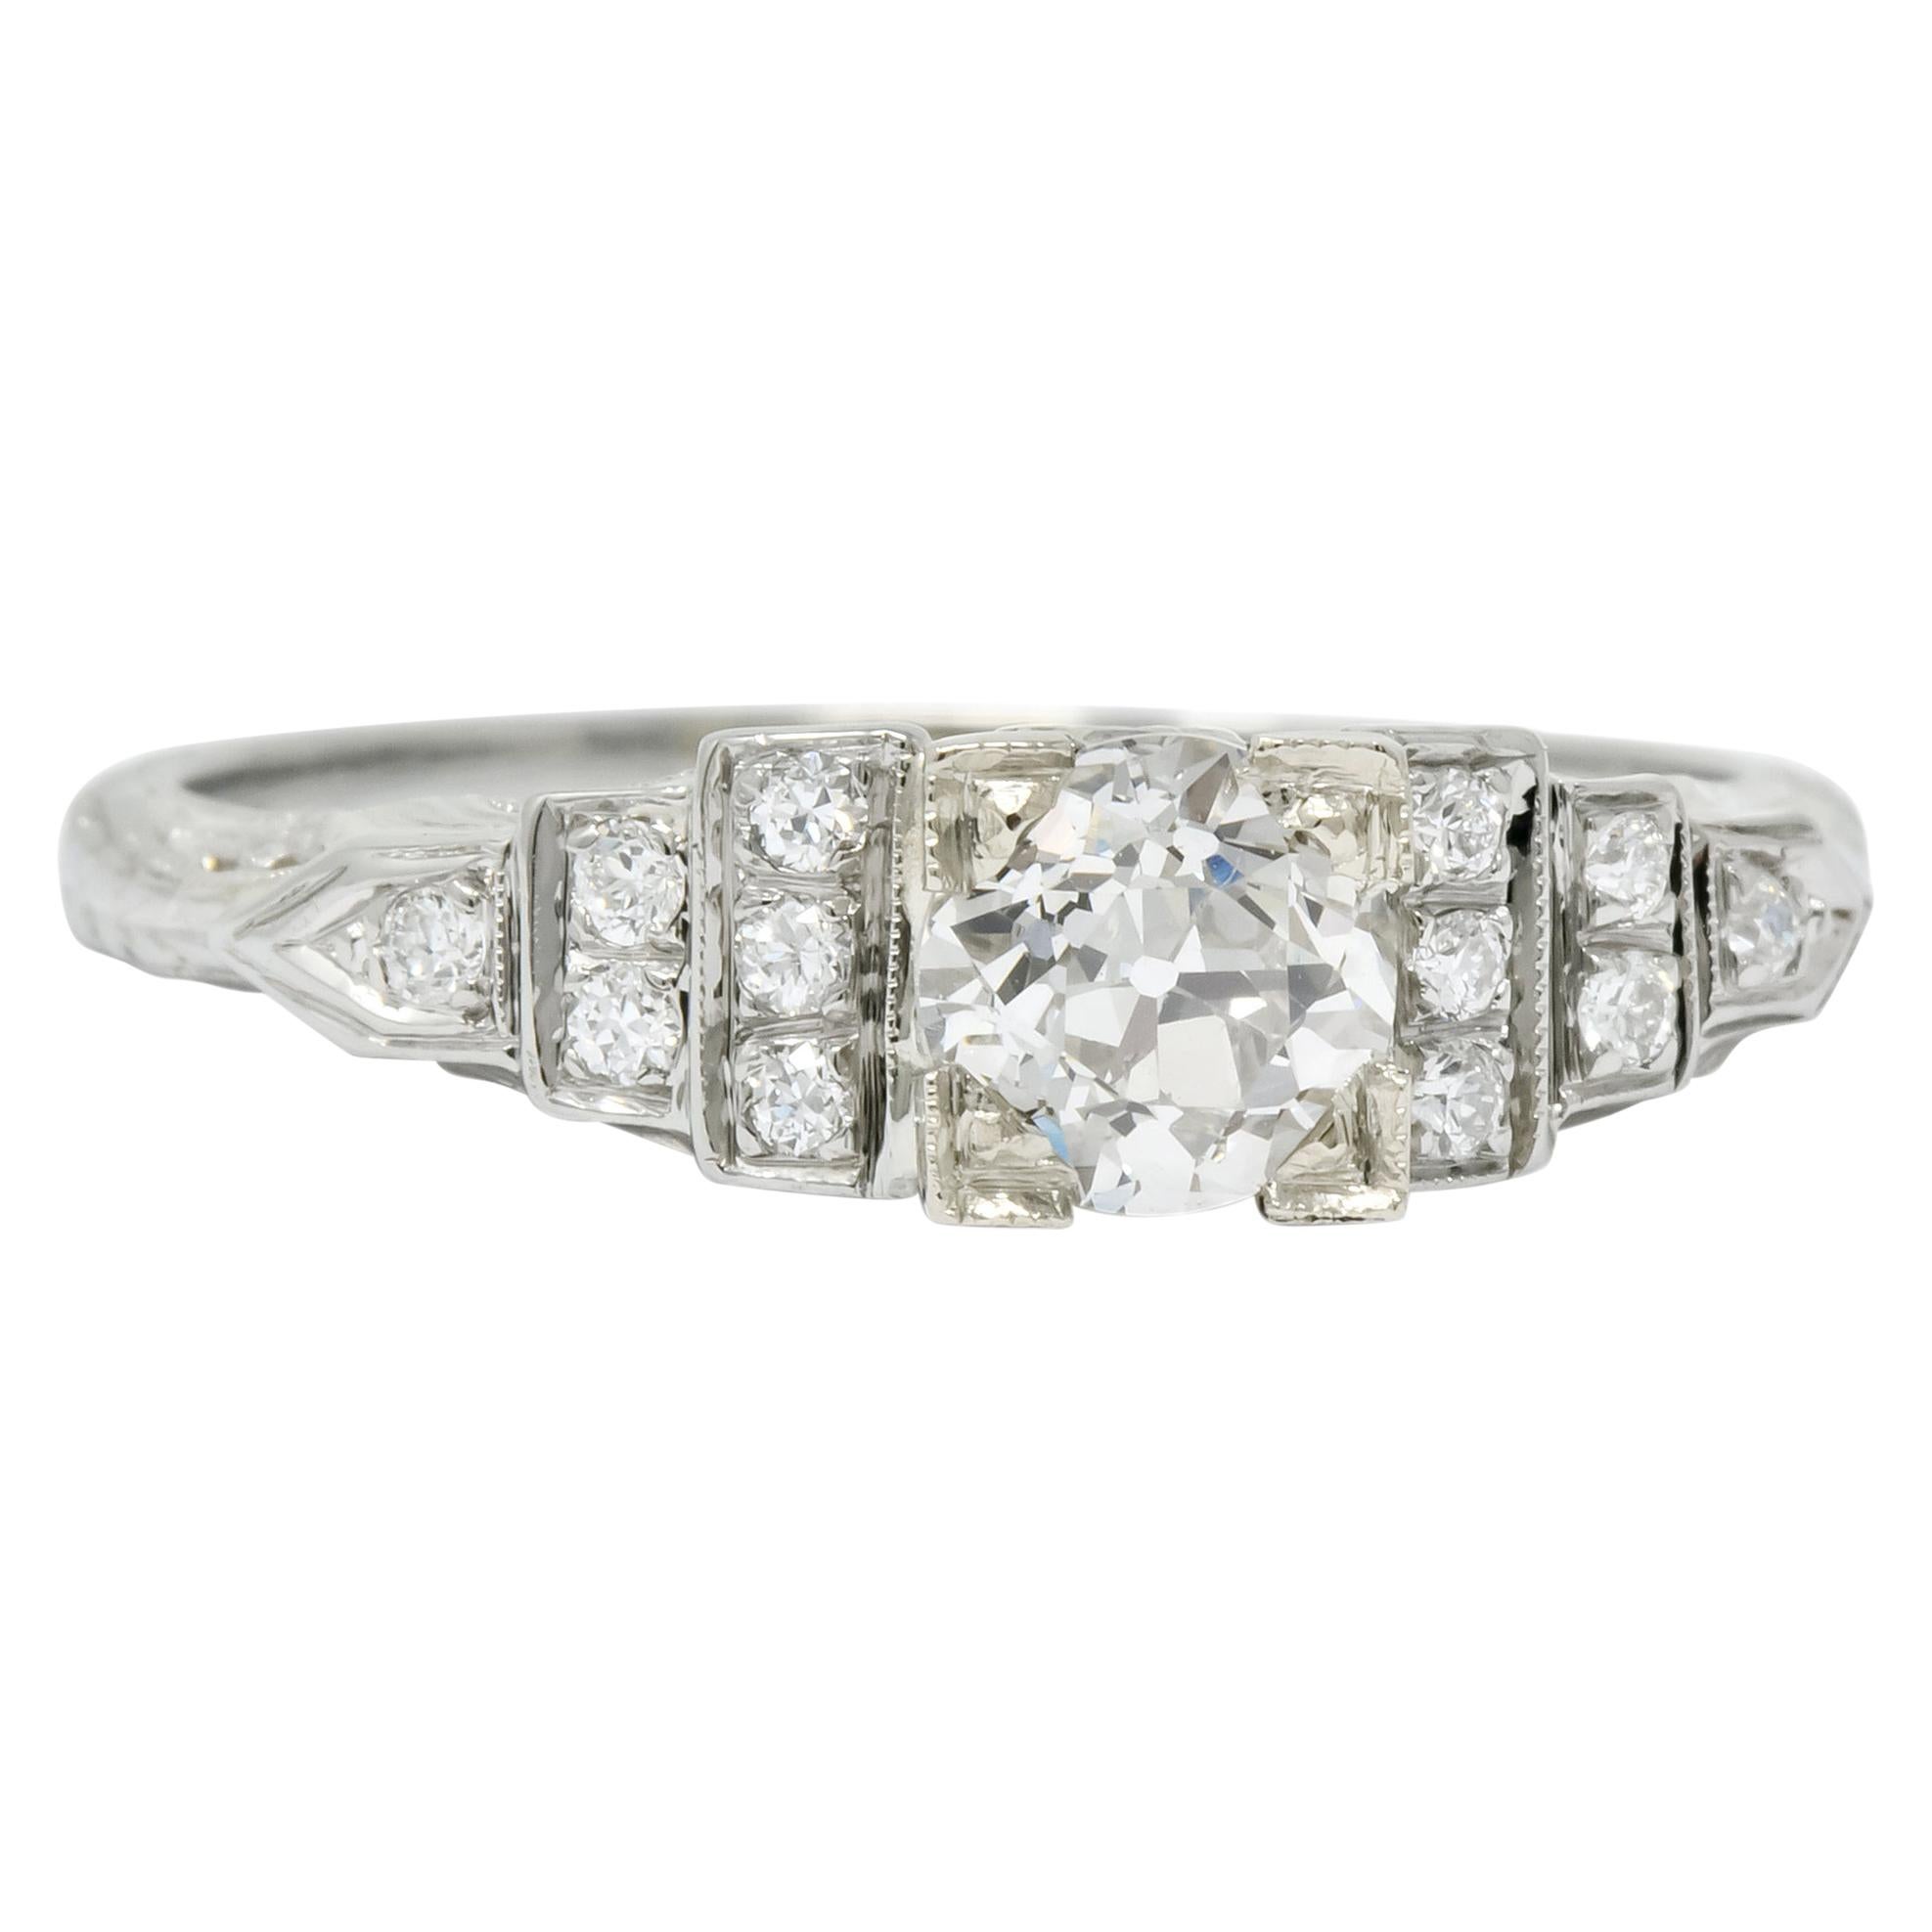 1930s Art Deco 0.81 Carat Diamond 18 Karat White Gold Engagement Ring